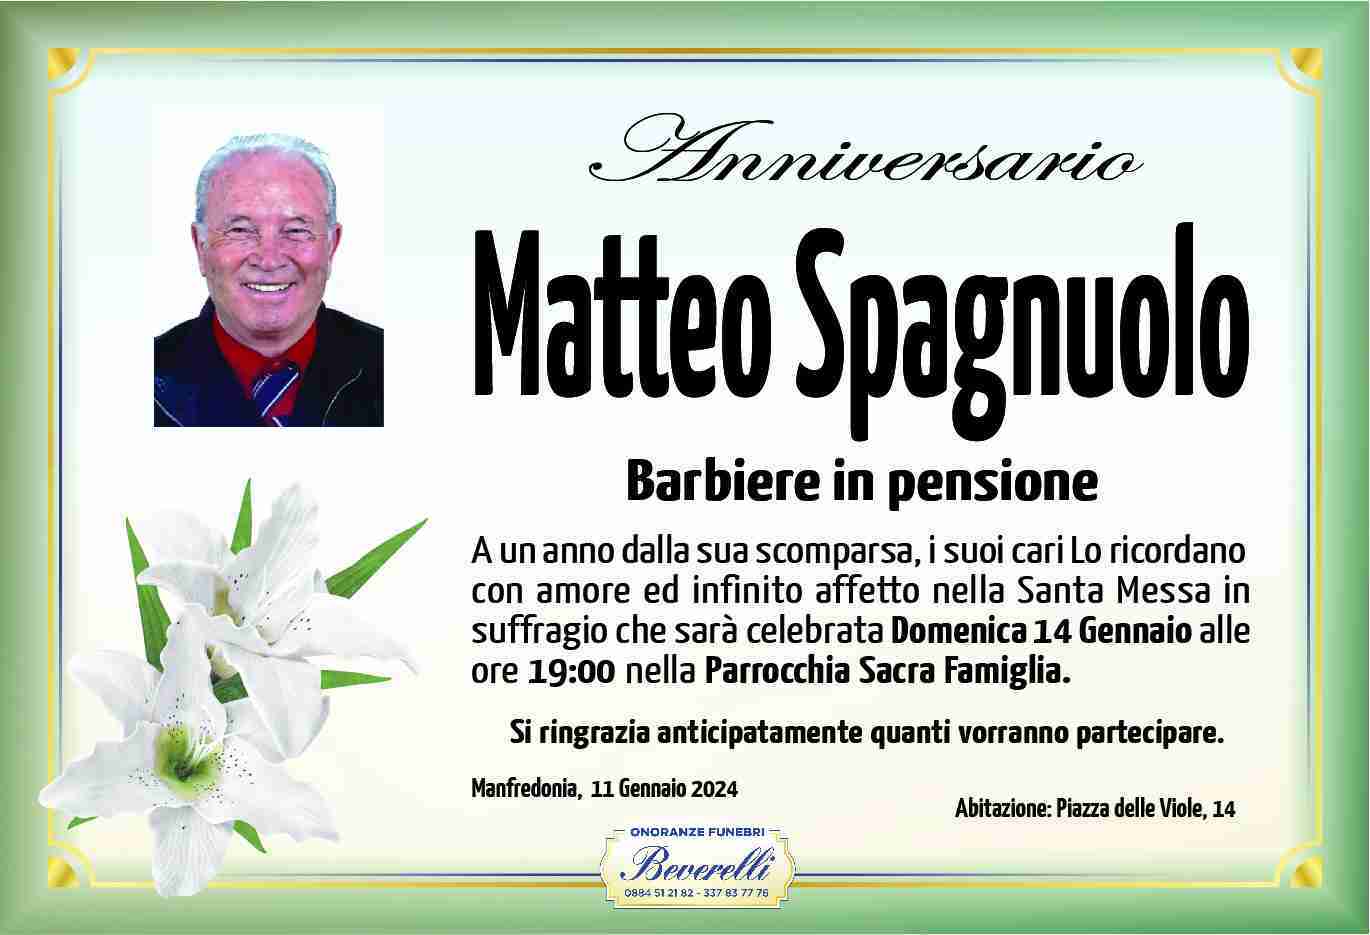 Matteo Spagnuolo